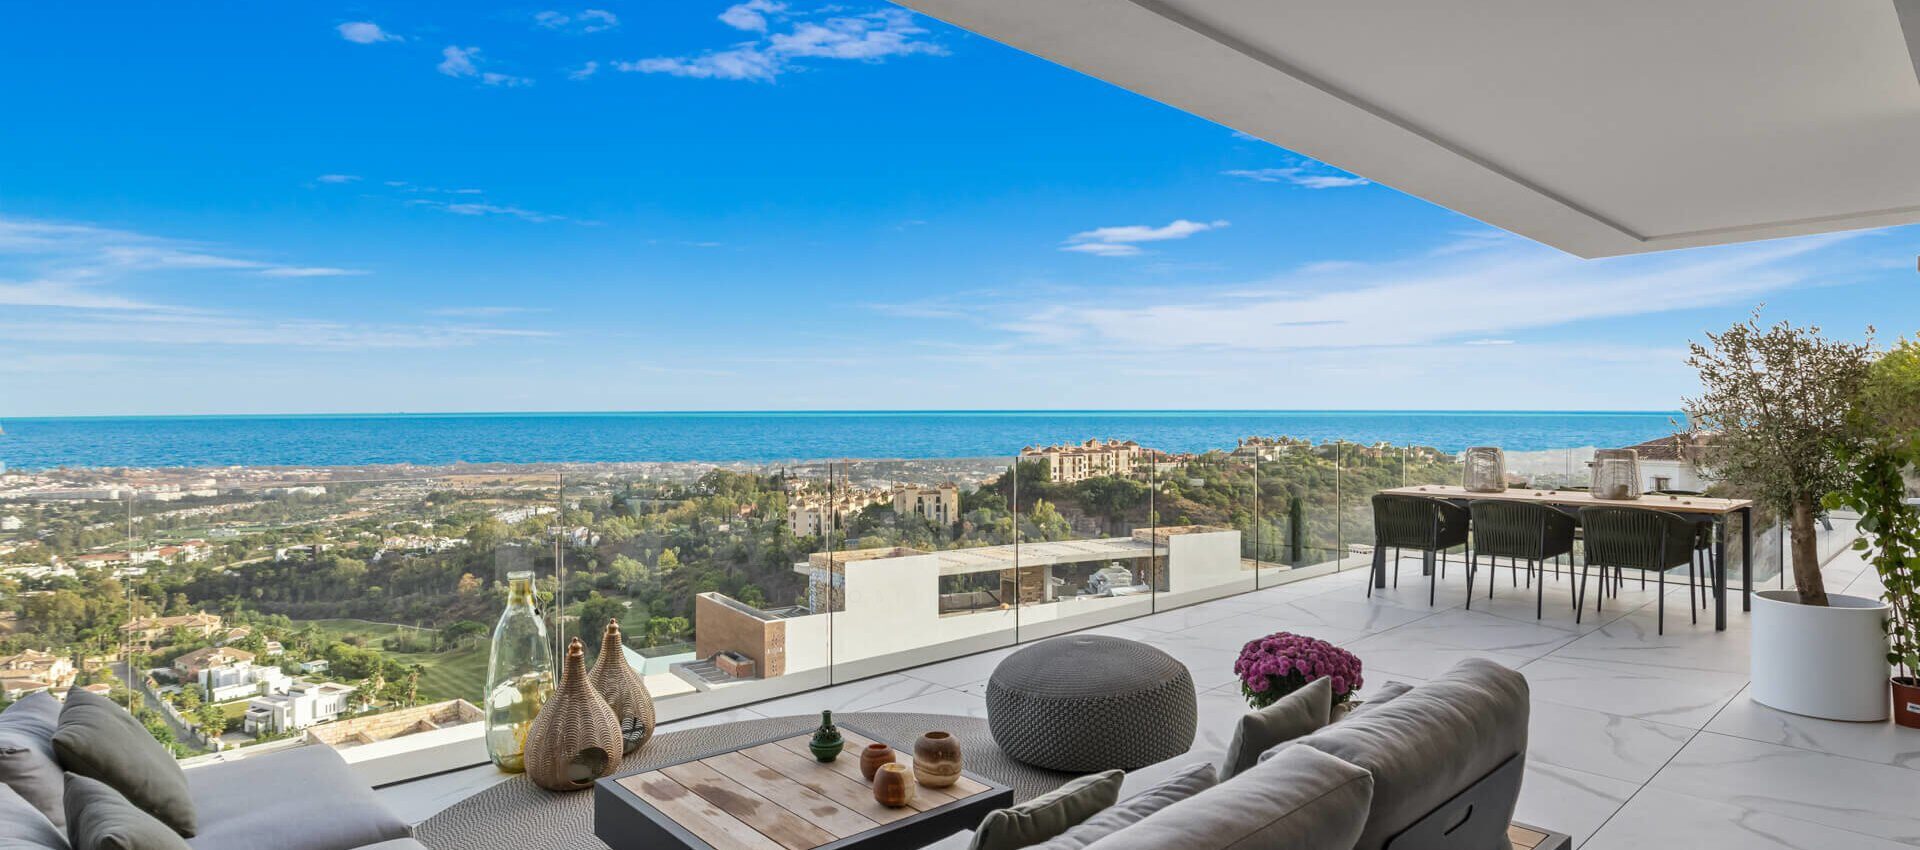 Apartamento de lujo con los más altos estándares de calidad y vistas panorámicas al mar